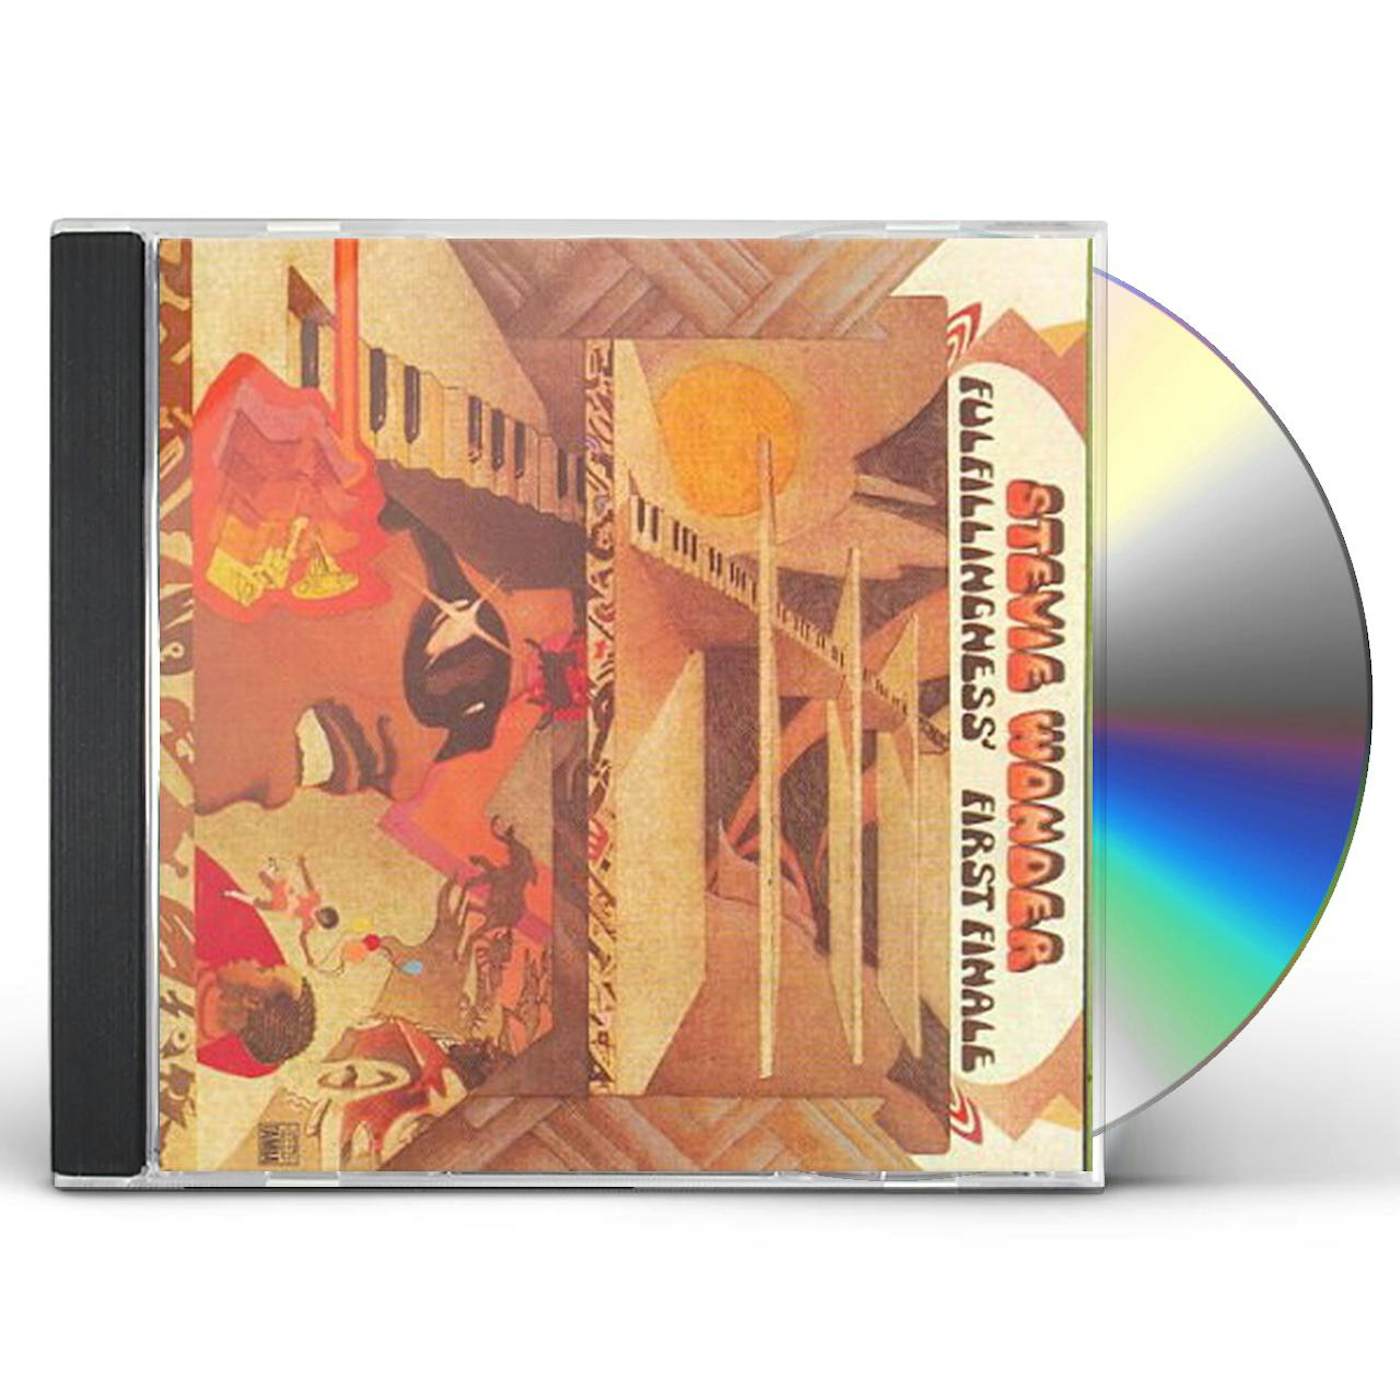 Stevie Wonder FULFILLINGNESS CD